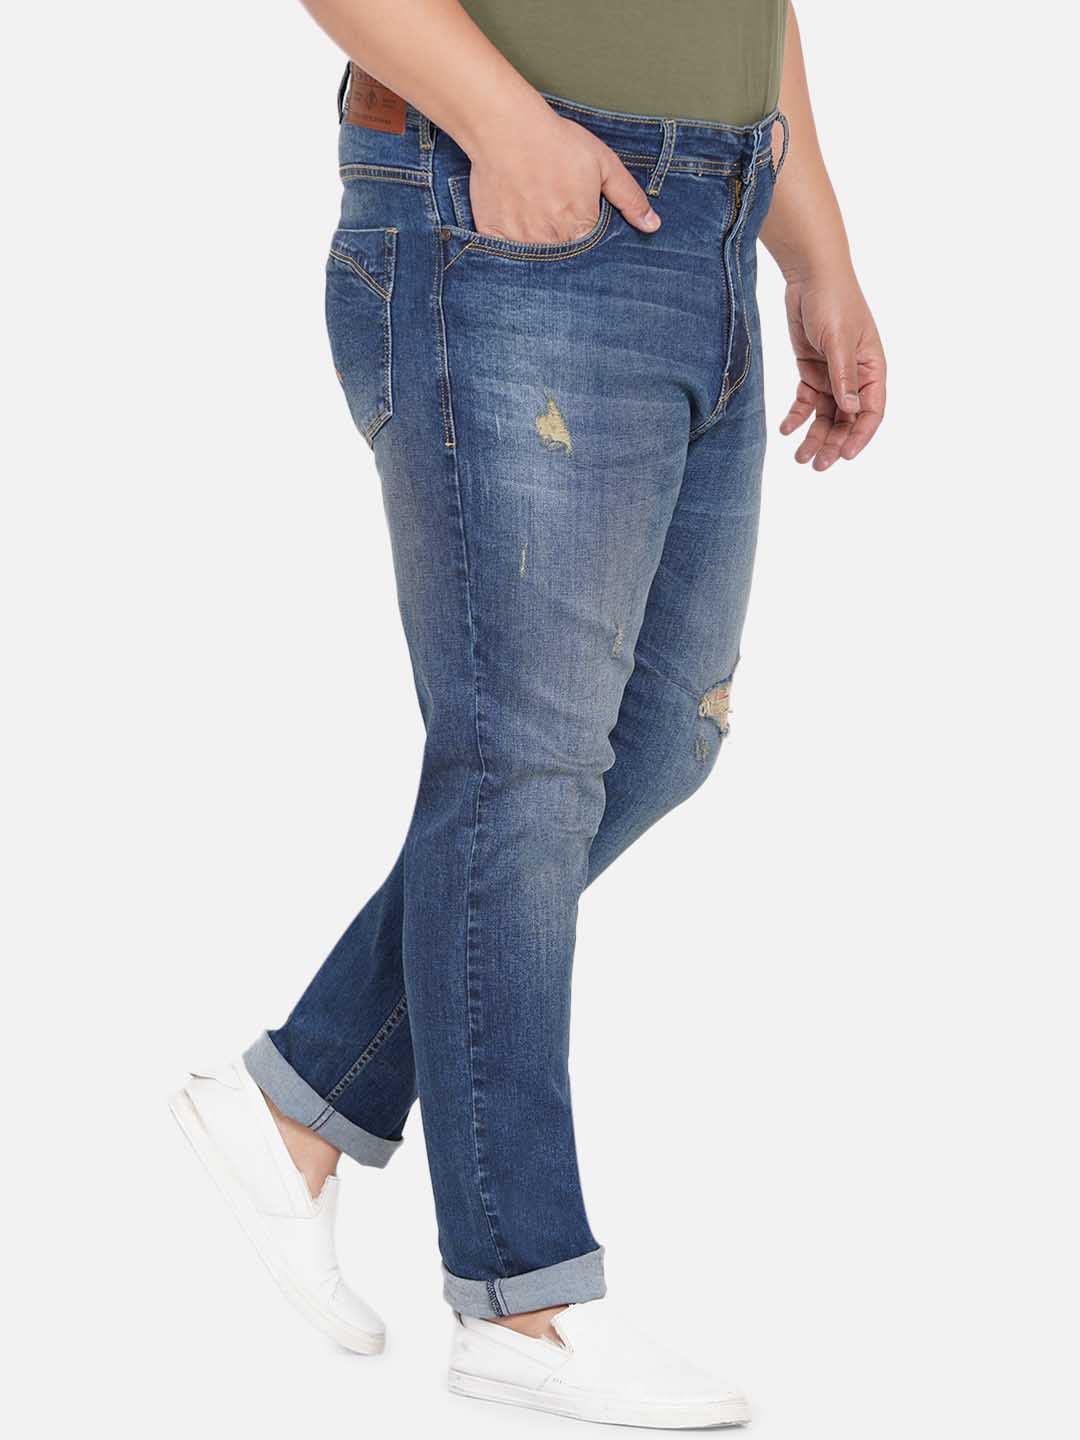 bottomwear/jeans/EJPJ25044/ejpj25044-3.jpg